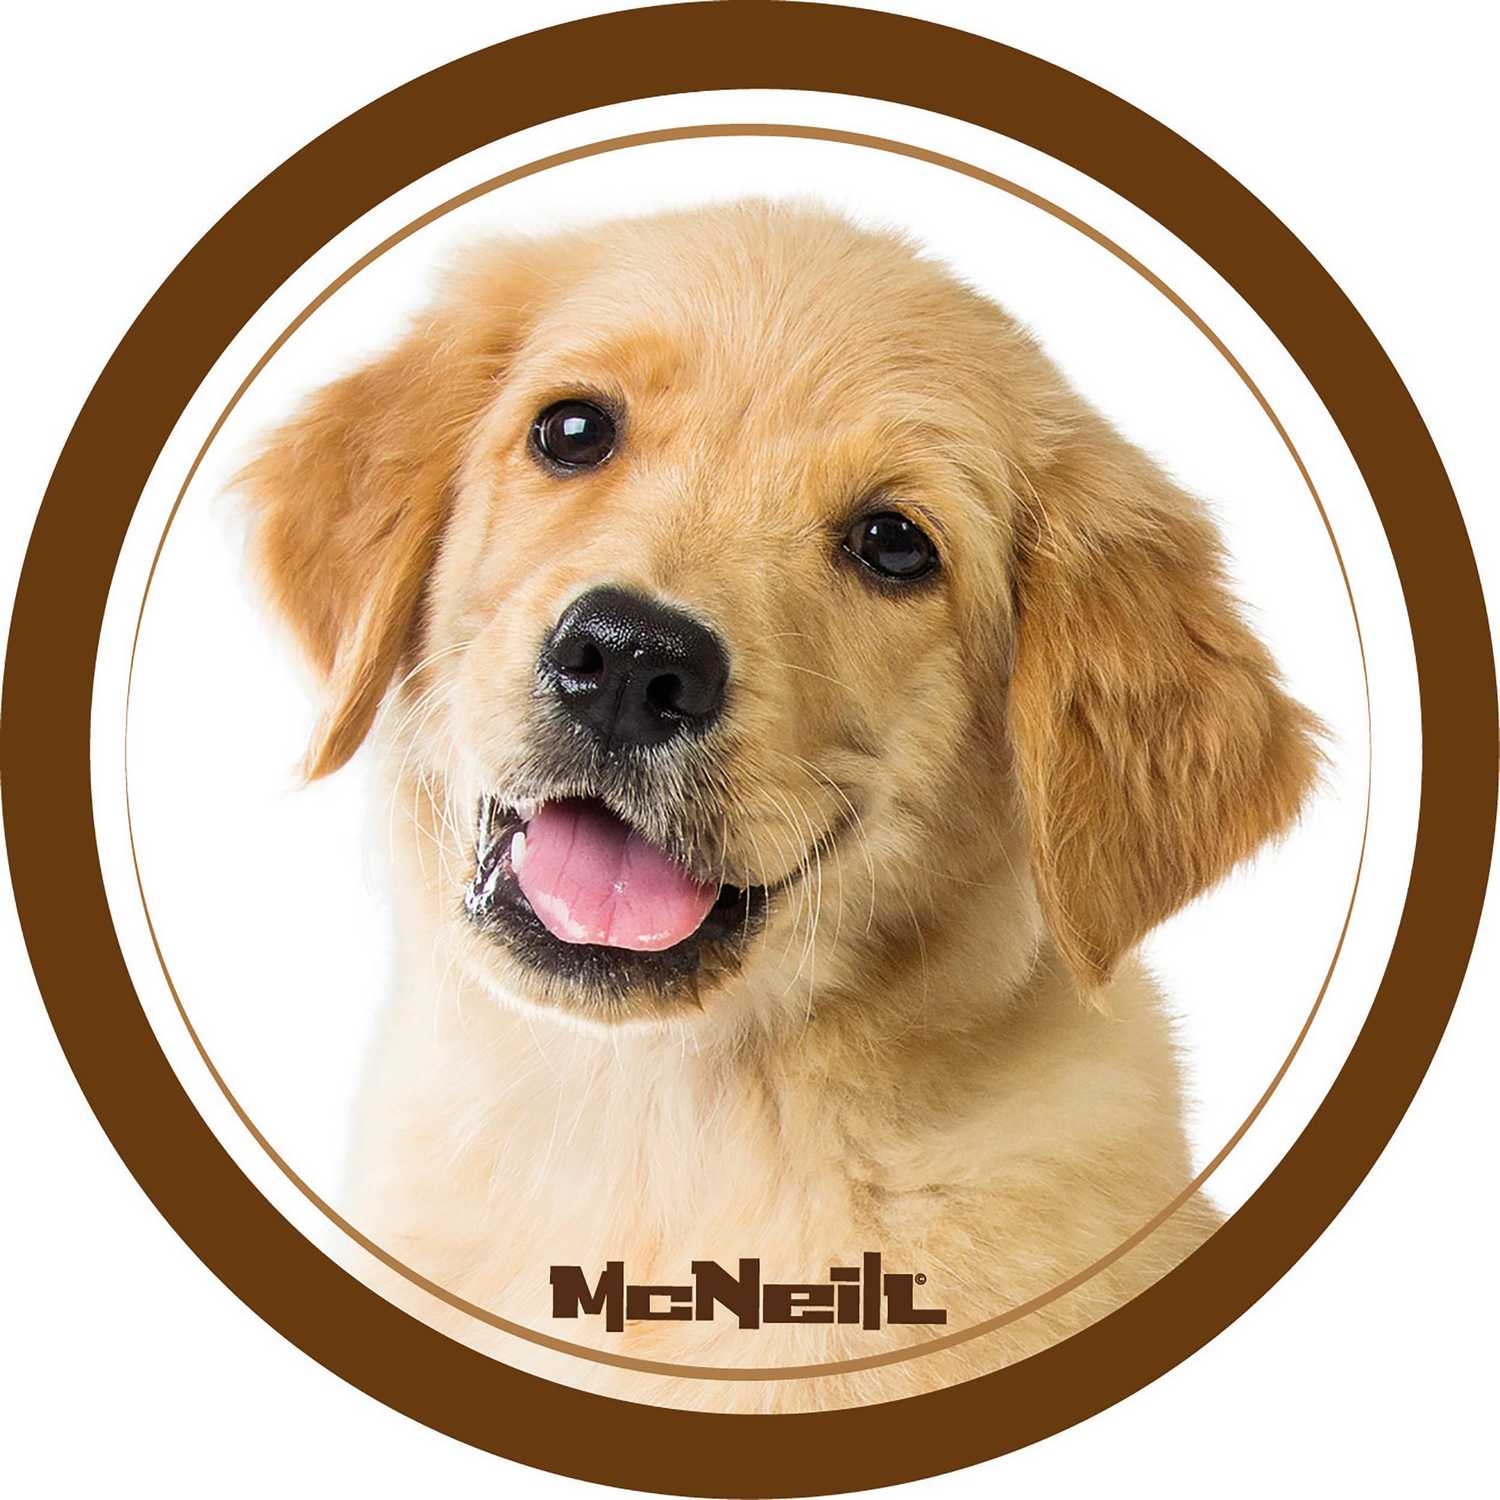 McNeill 'Hund braun' McAddy zu Schulranzen